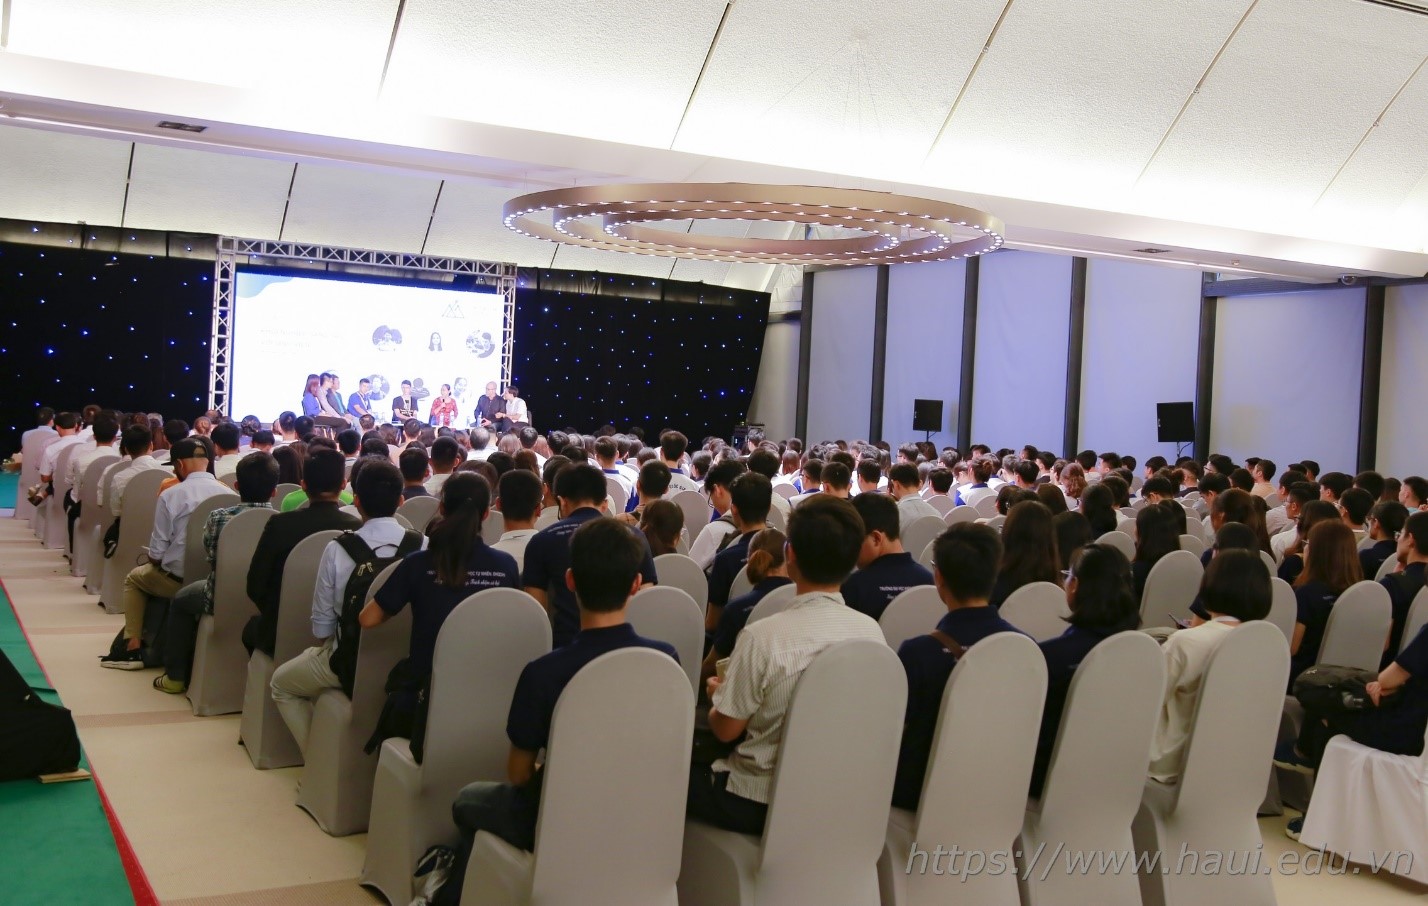 Sinh viên Đại học Công nghiệp Hà Nội nhận tài trợ khởi nghiệp từ VinTech City